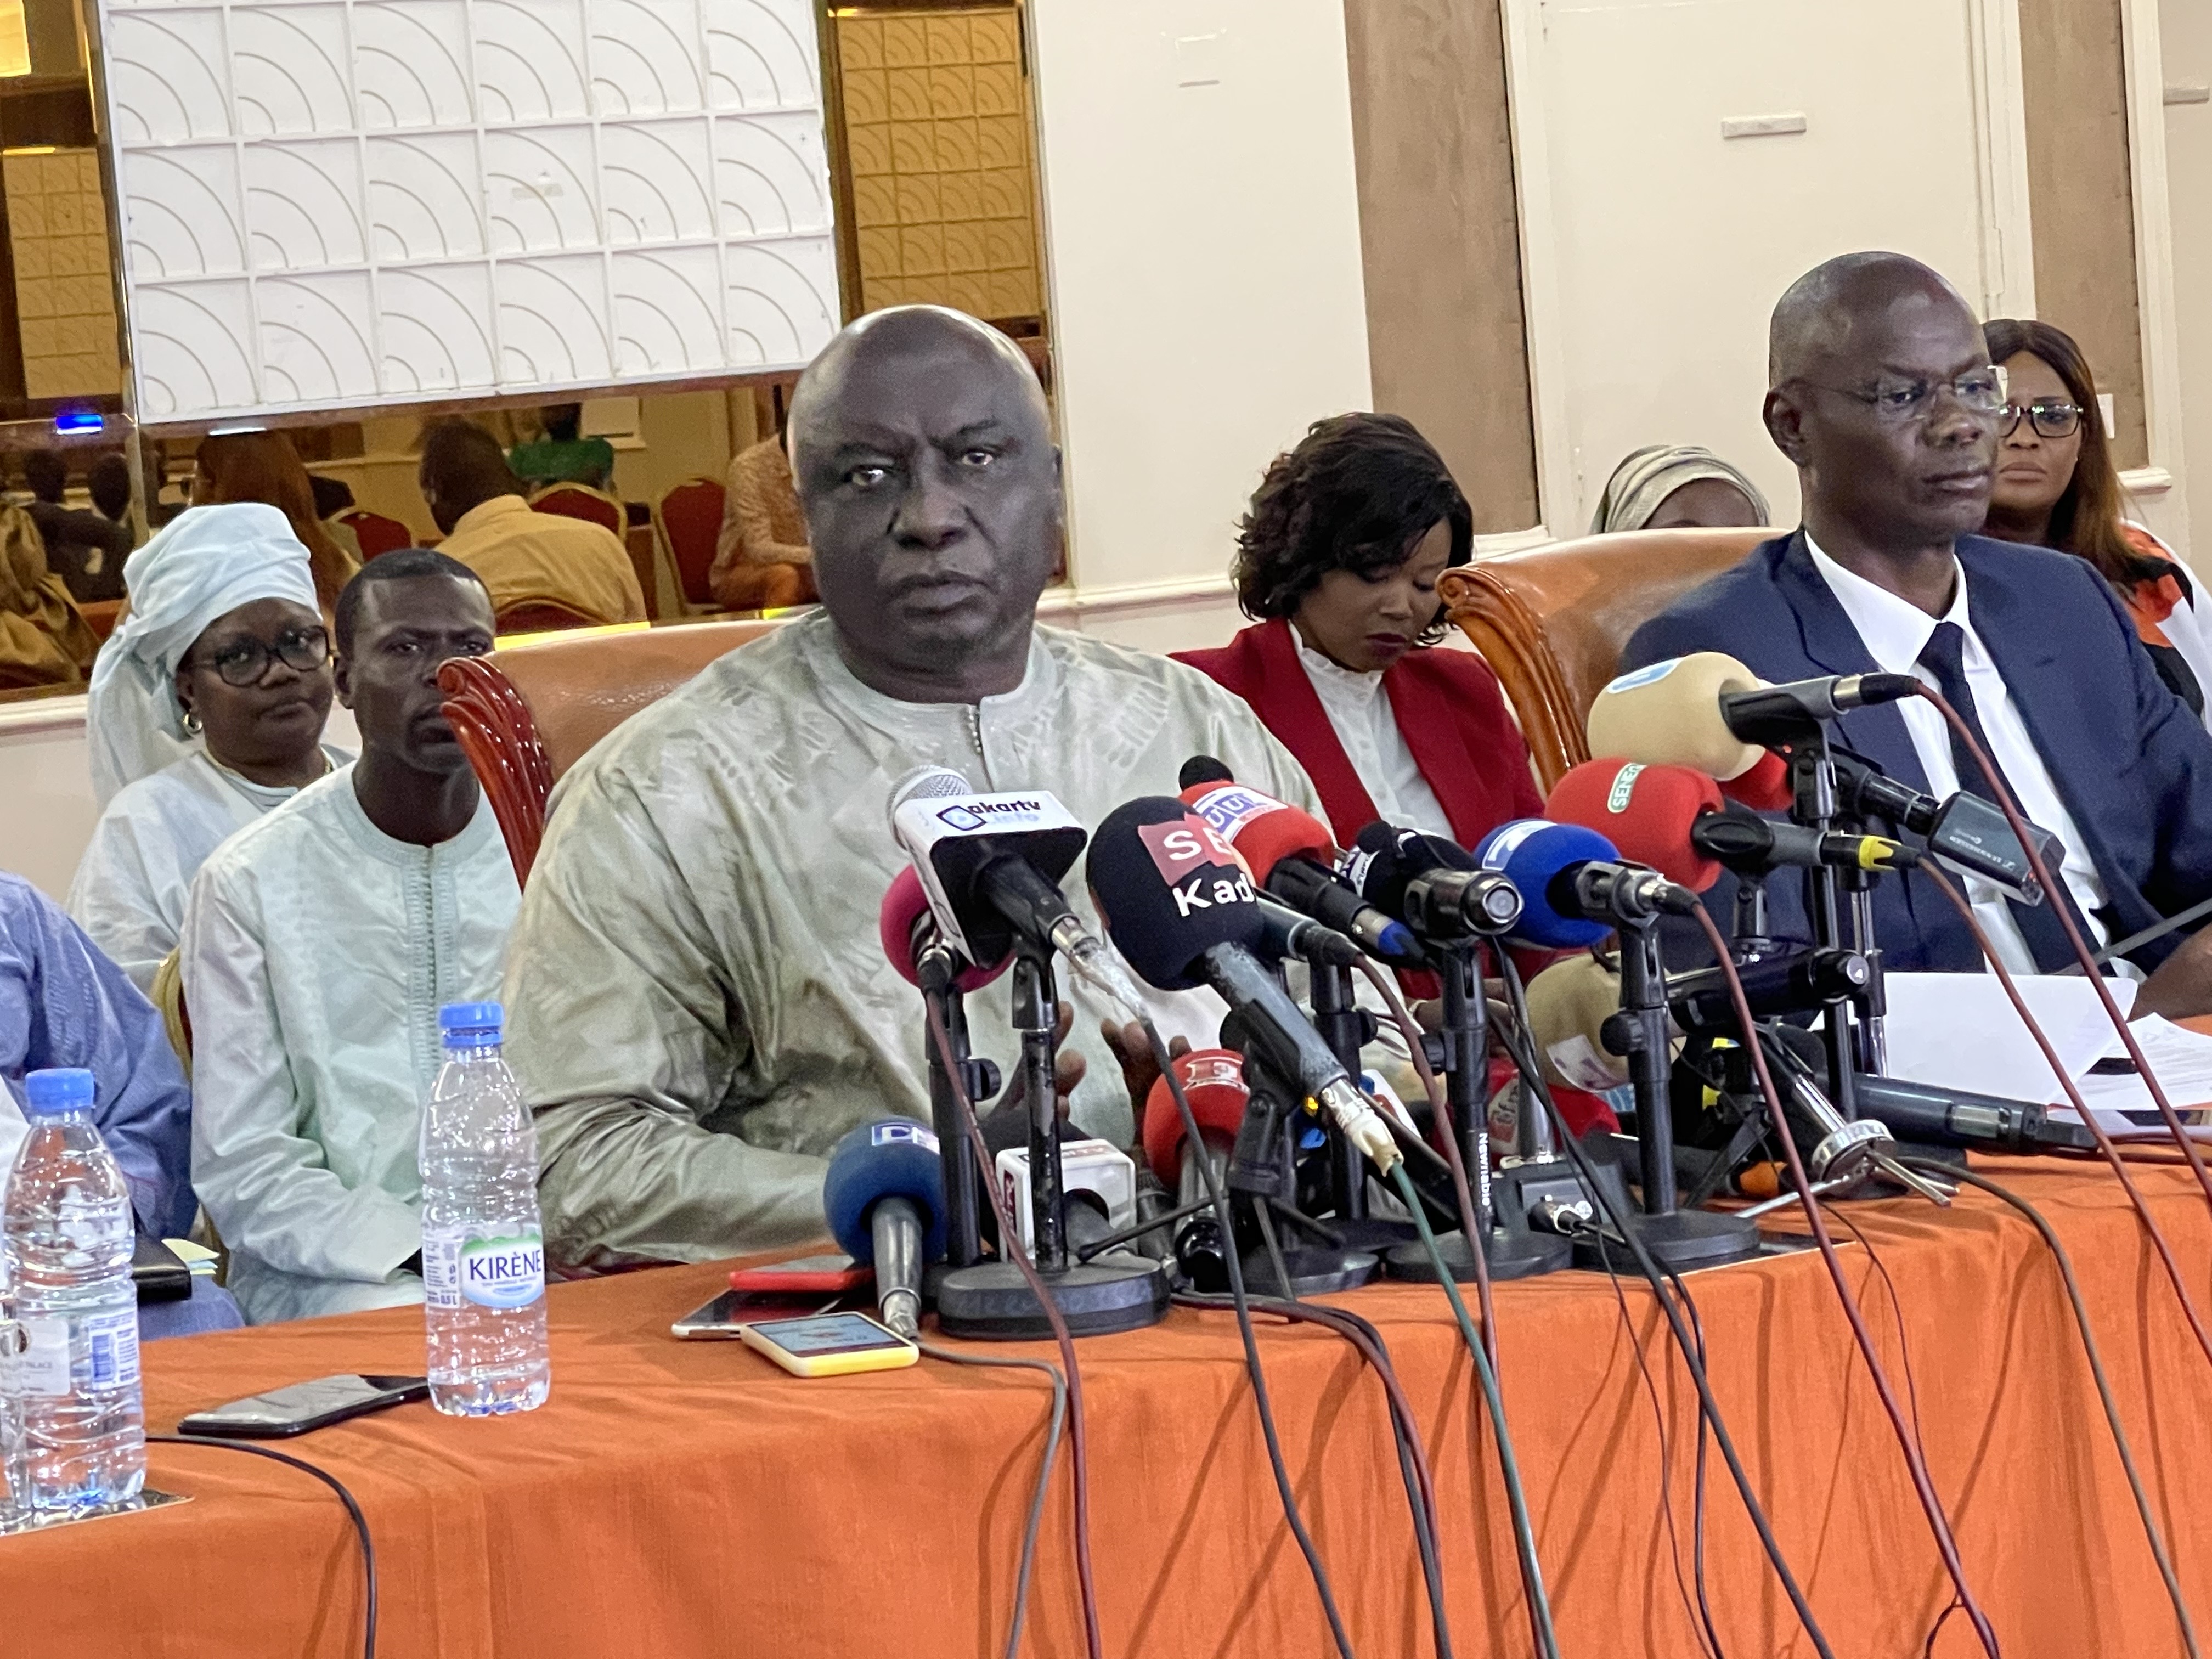 Idrissa Seck invite la classe politique au respect des décisions du Conseil constitutionnel